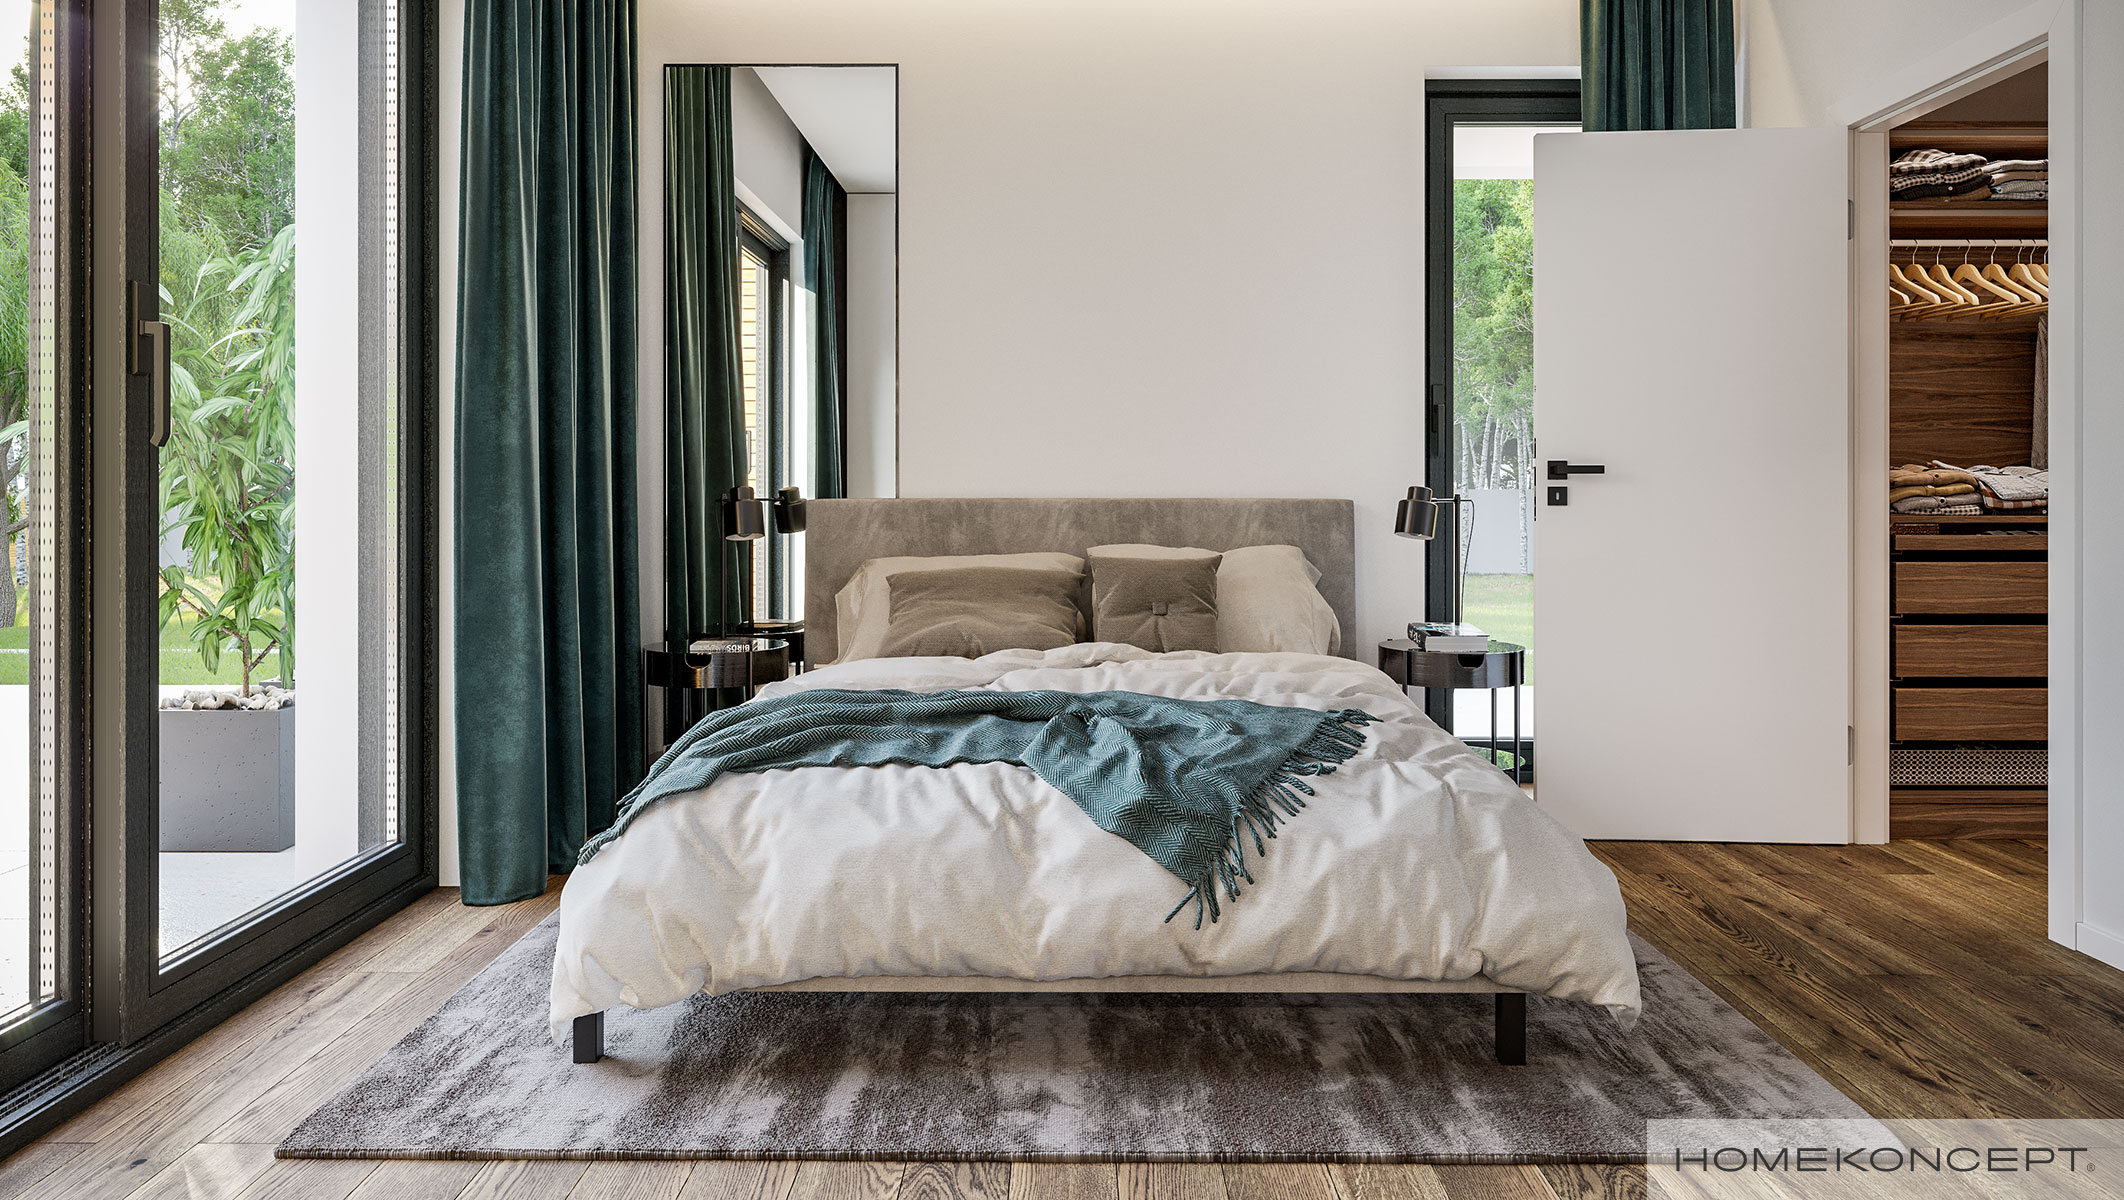 Sypialnia z własną garderobą i łazienką w projekcie HOMEKONCEPT 73 – modny dom z master bedroom